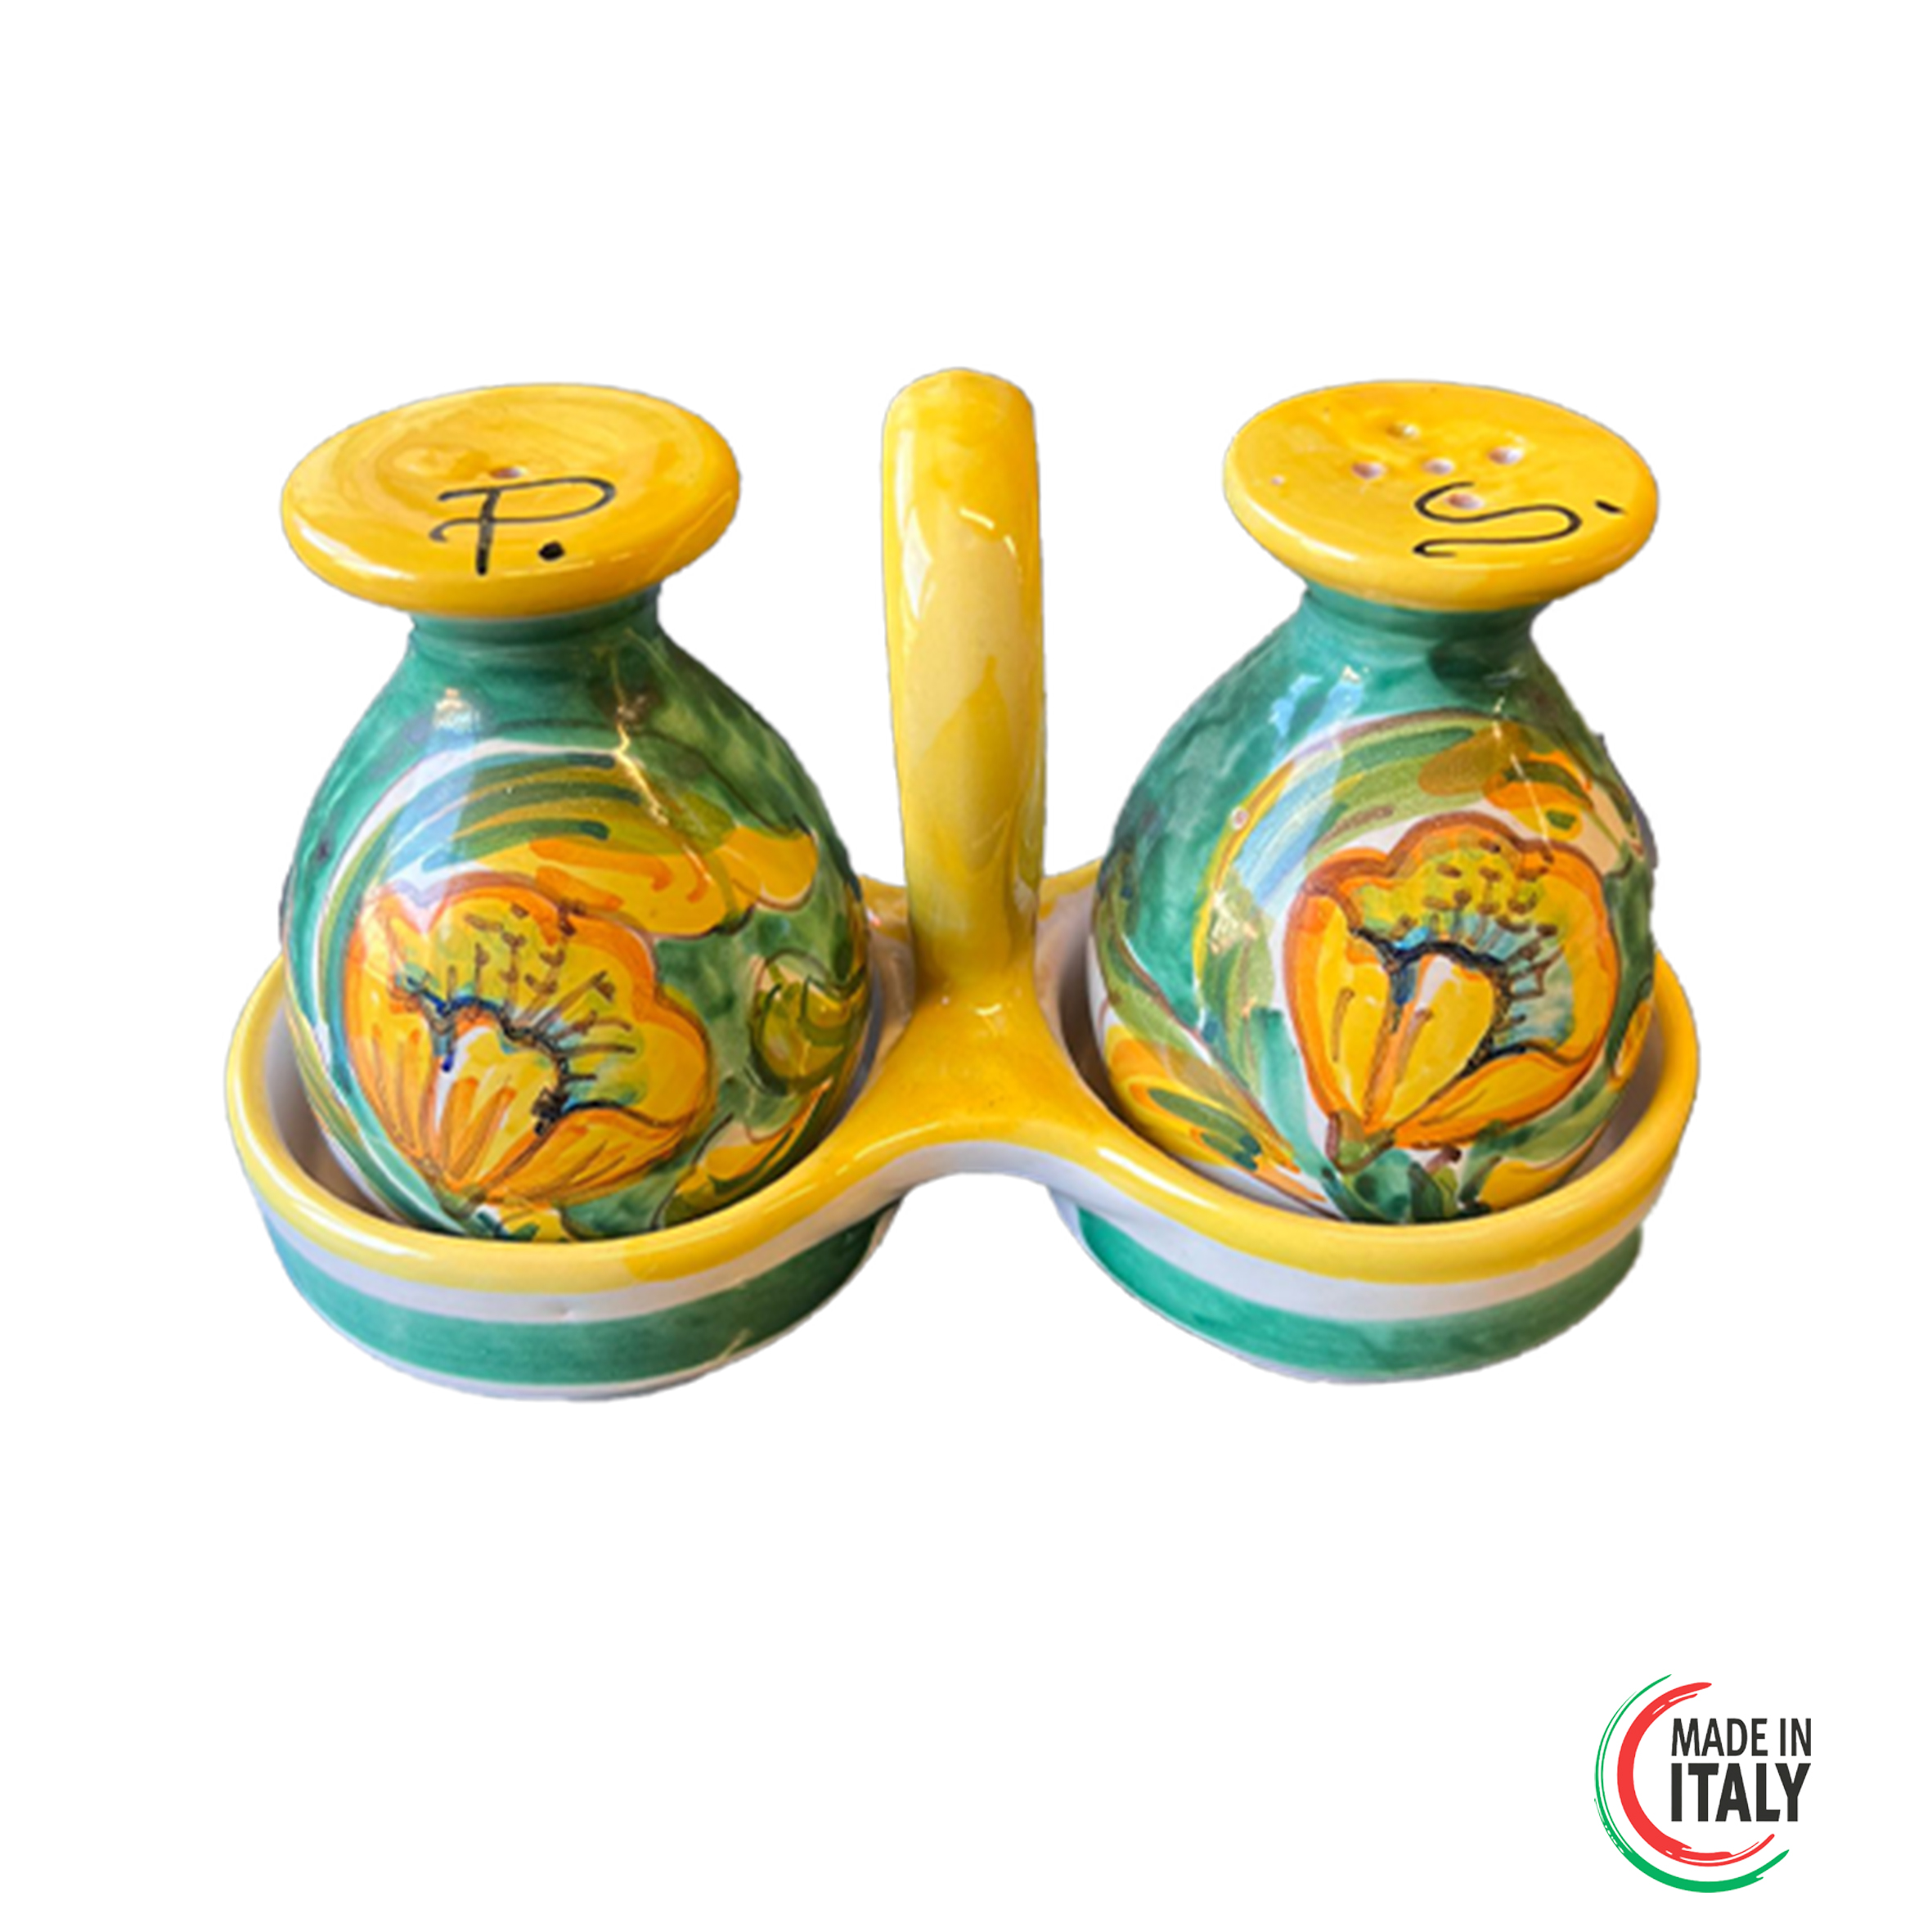 Ampolle porta Sale e Pepe in Ceramica - Galano Ceramiche